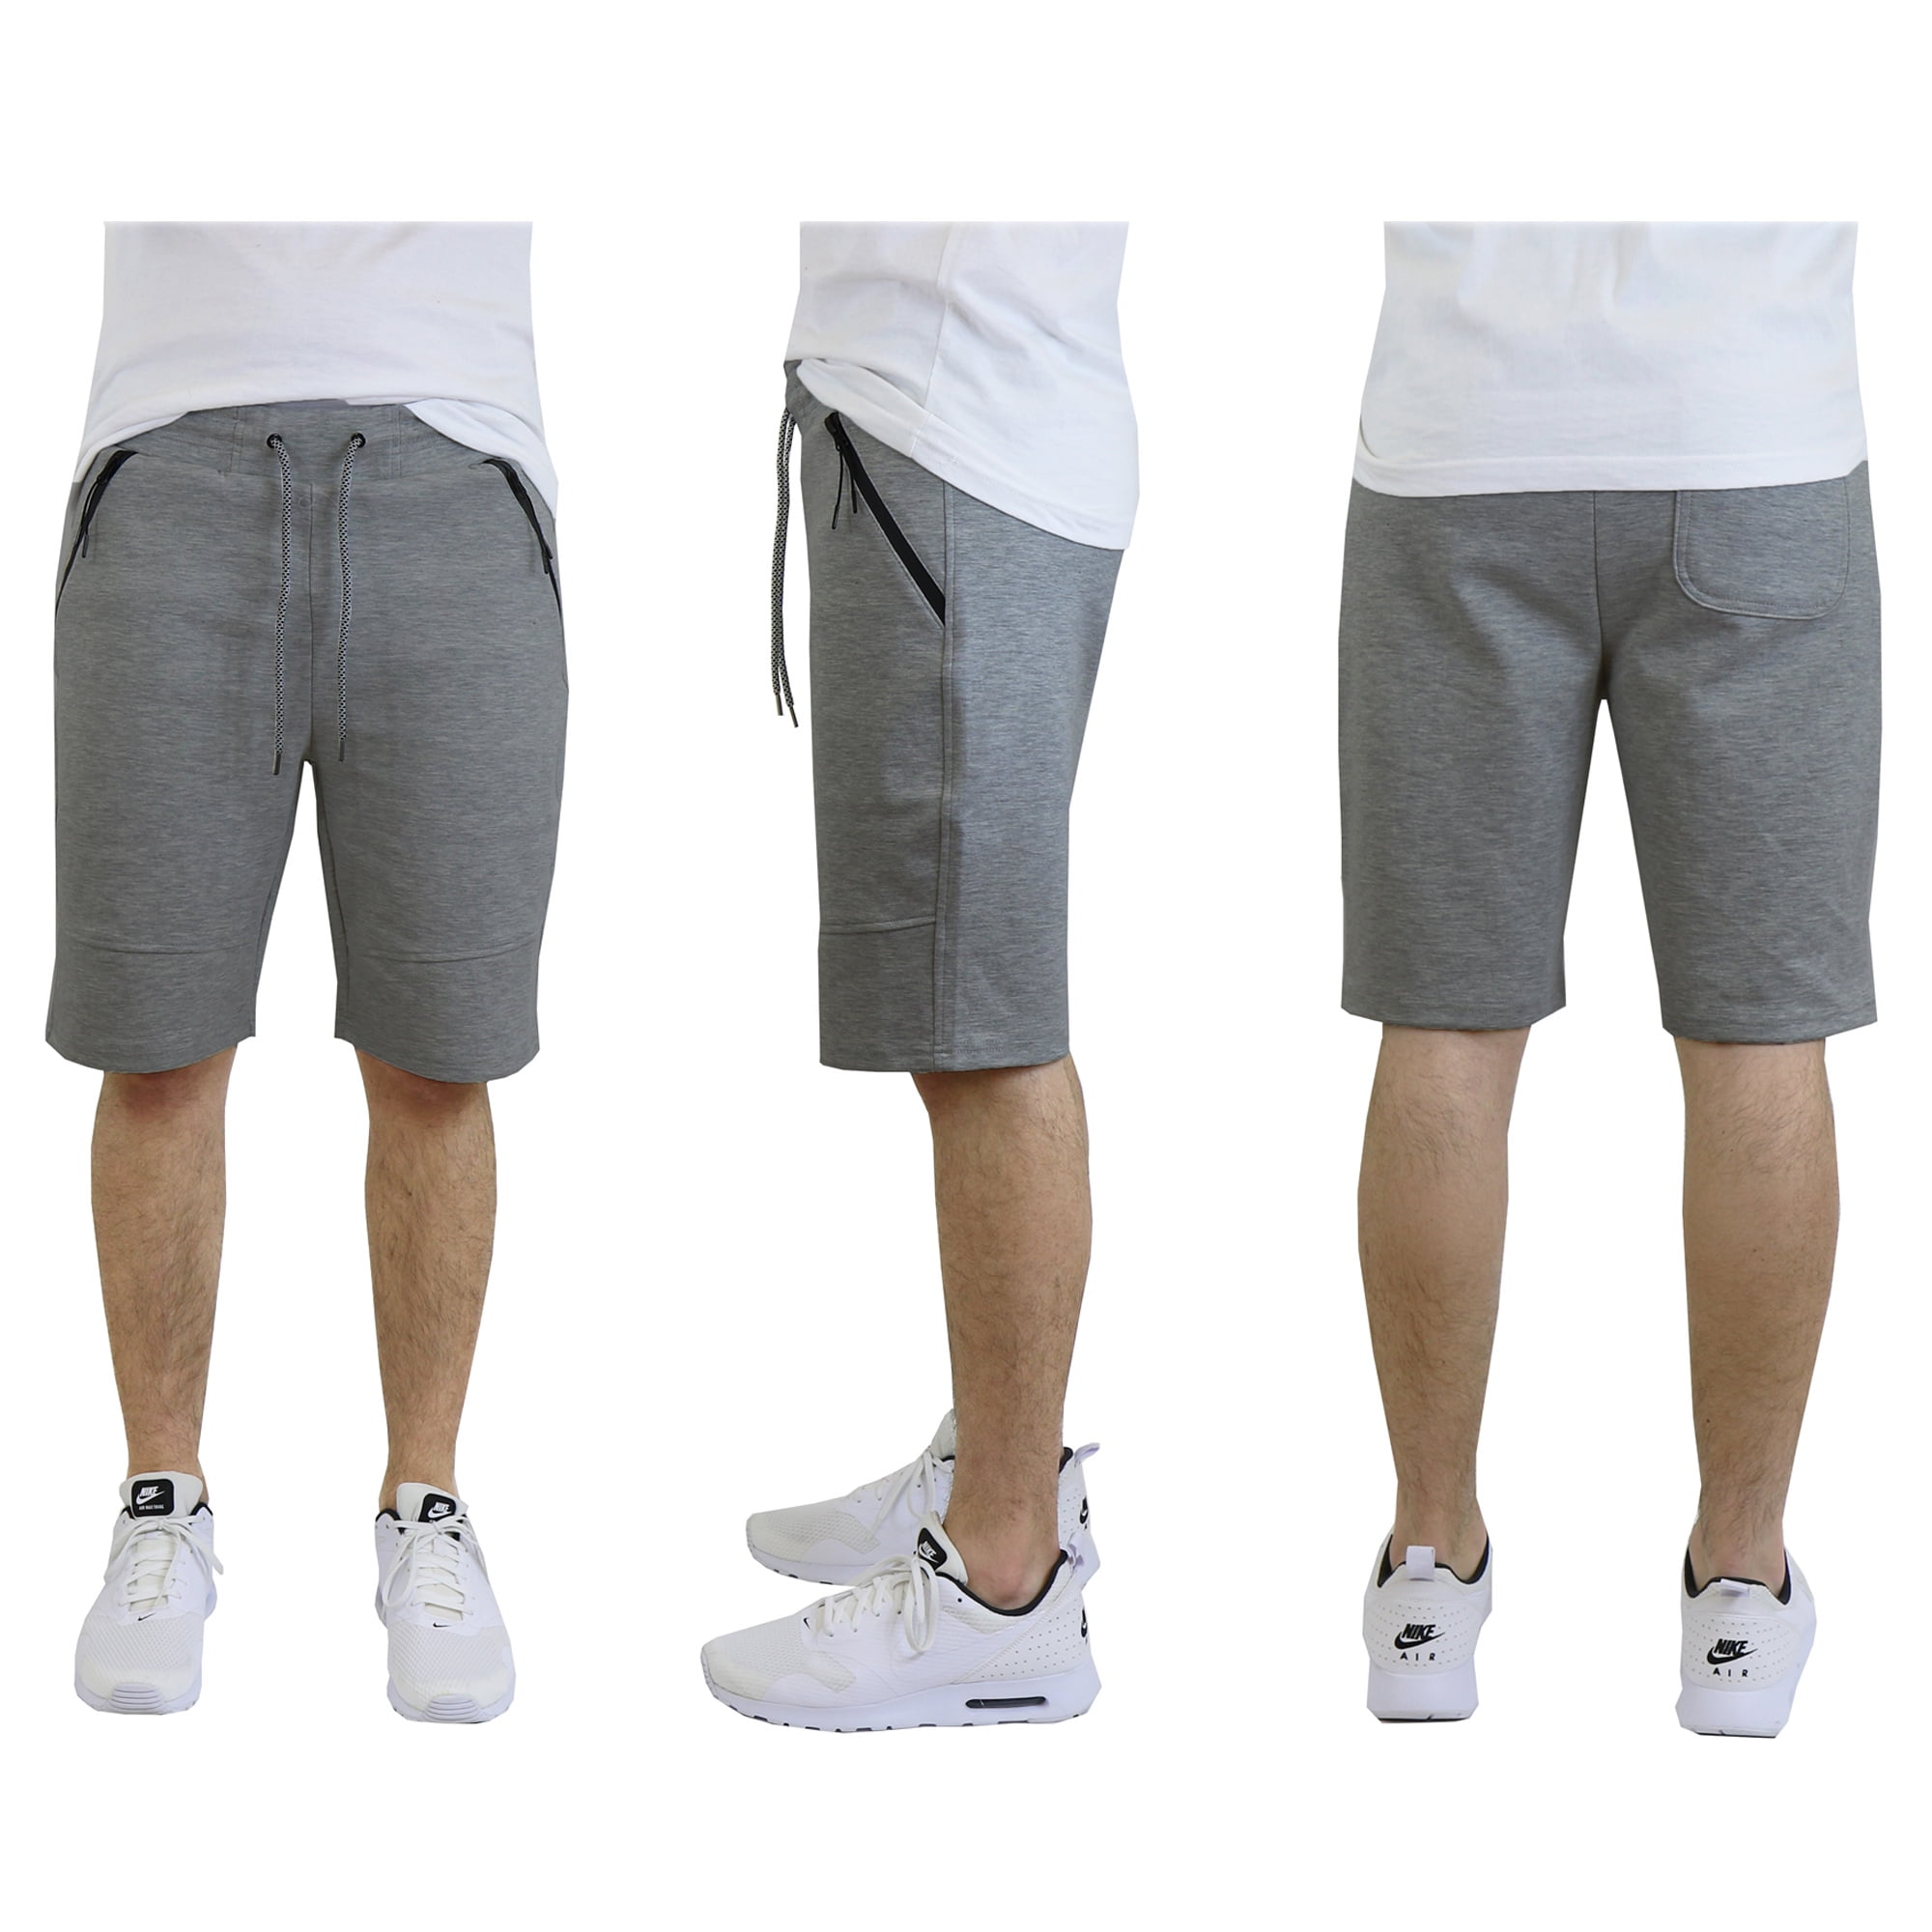 Mens Tech Fleece Shorts With Zipper Pockets - Walmart.com